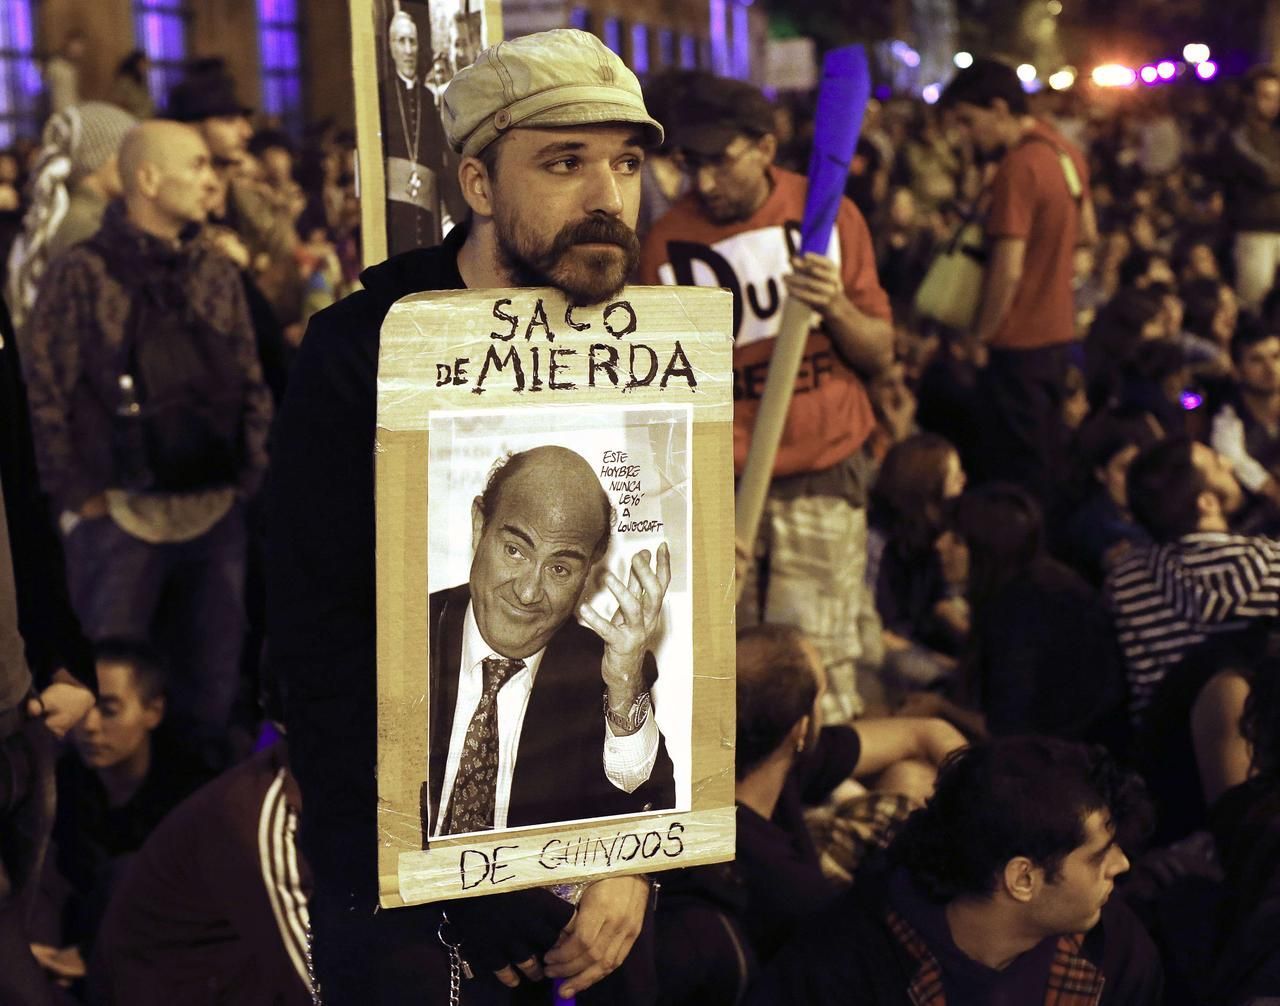 Foto: Protesty v Madridě